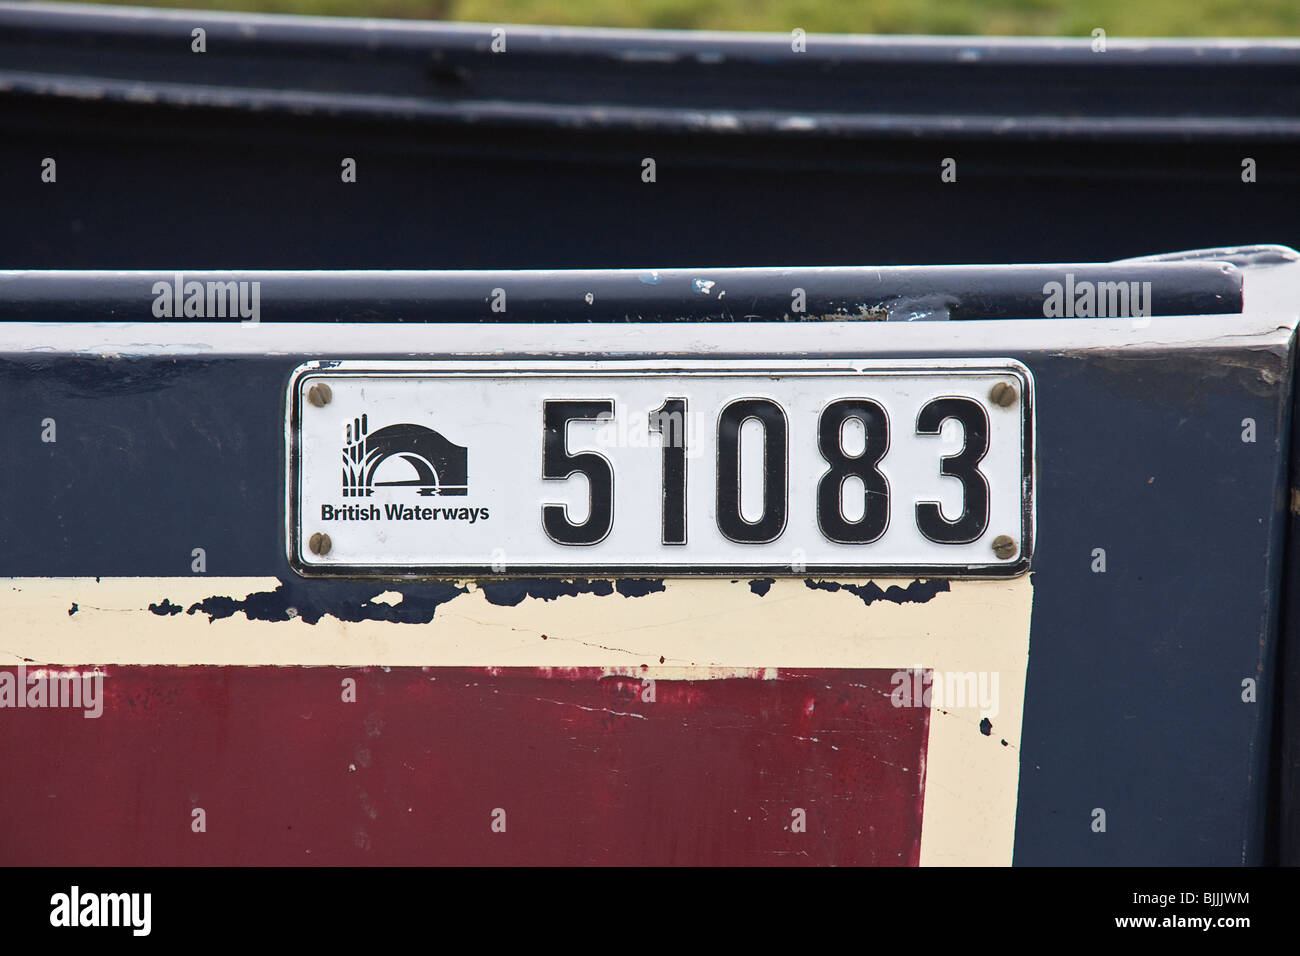 Boat License number, British waterways. Stock Photo